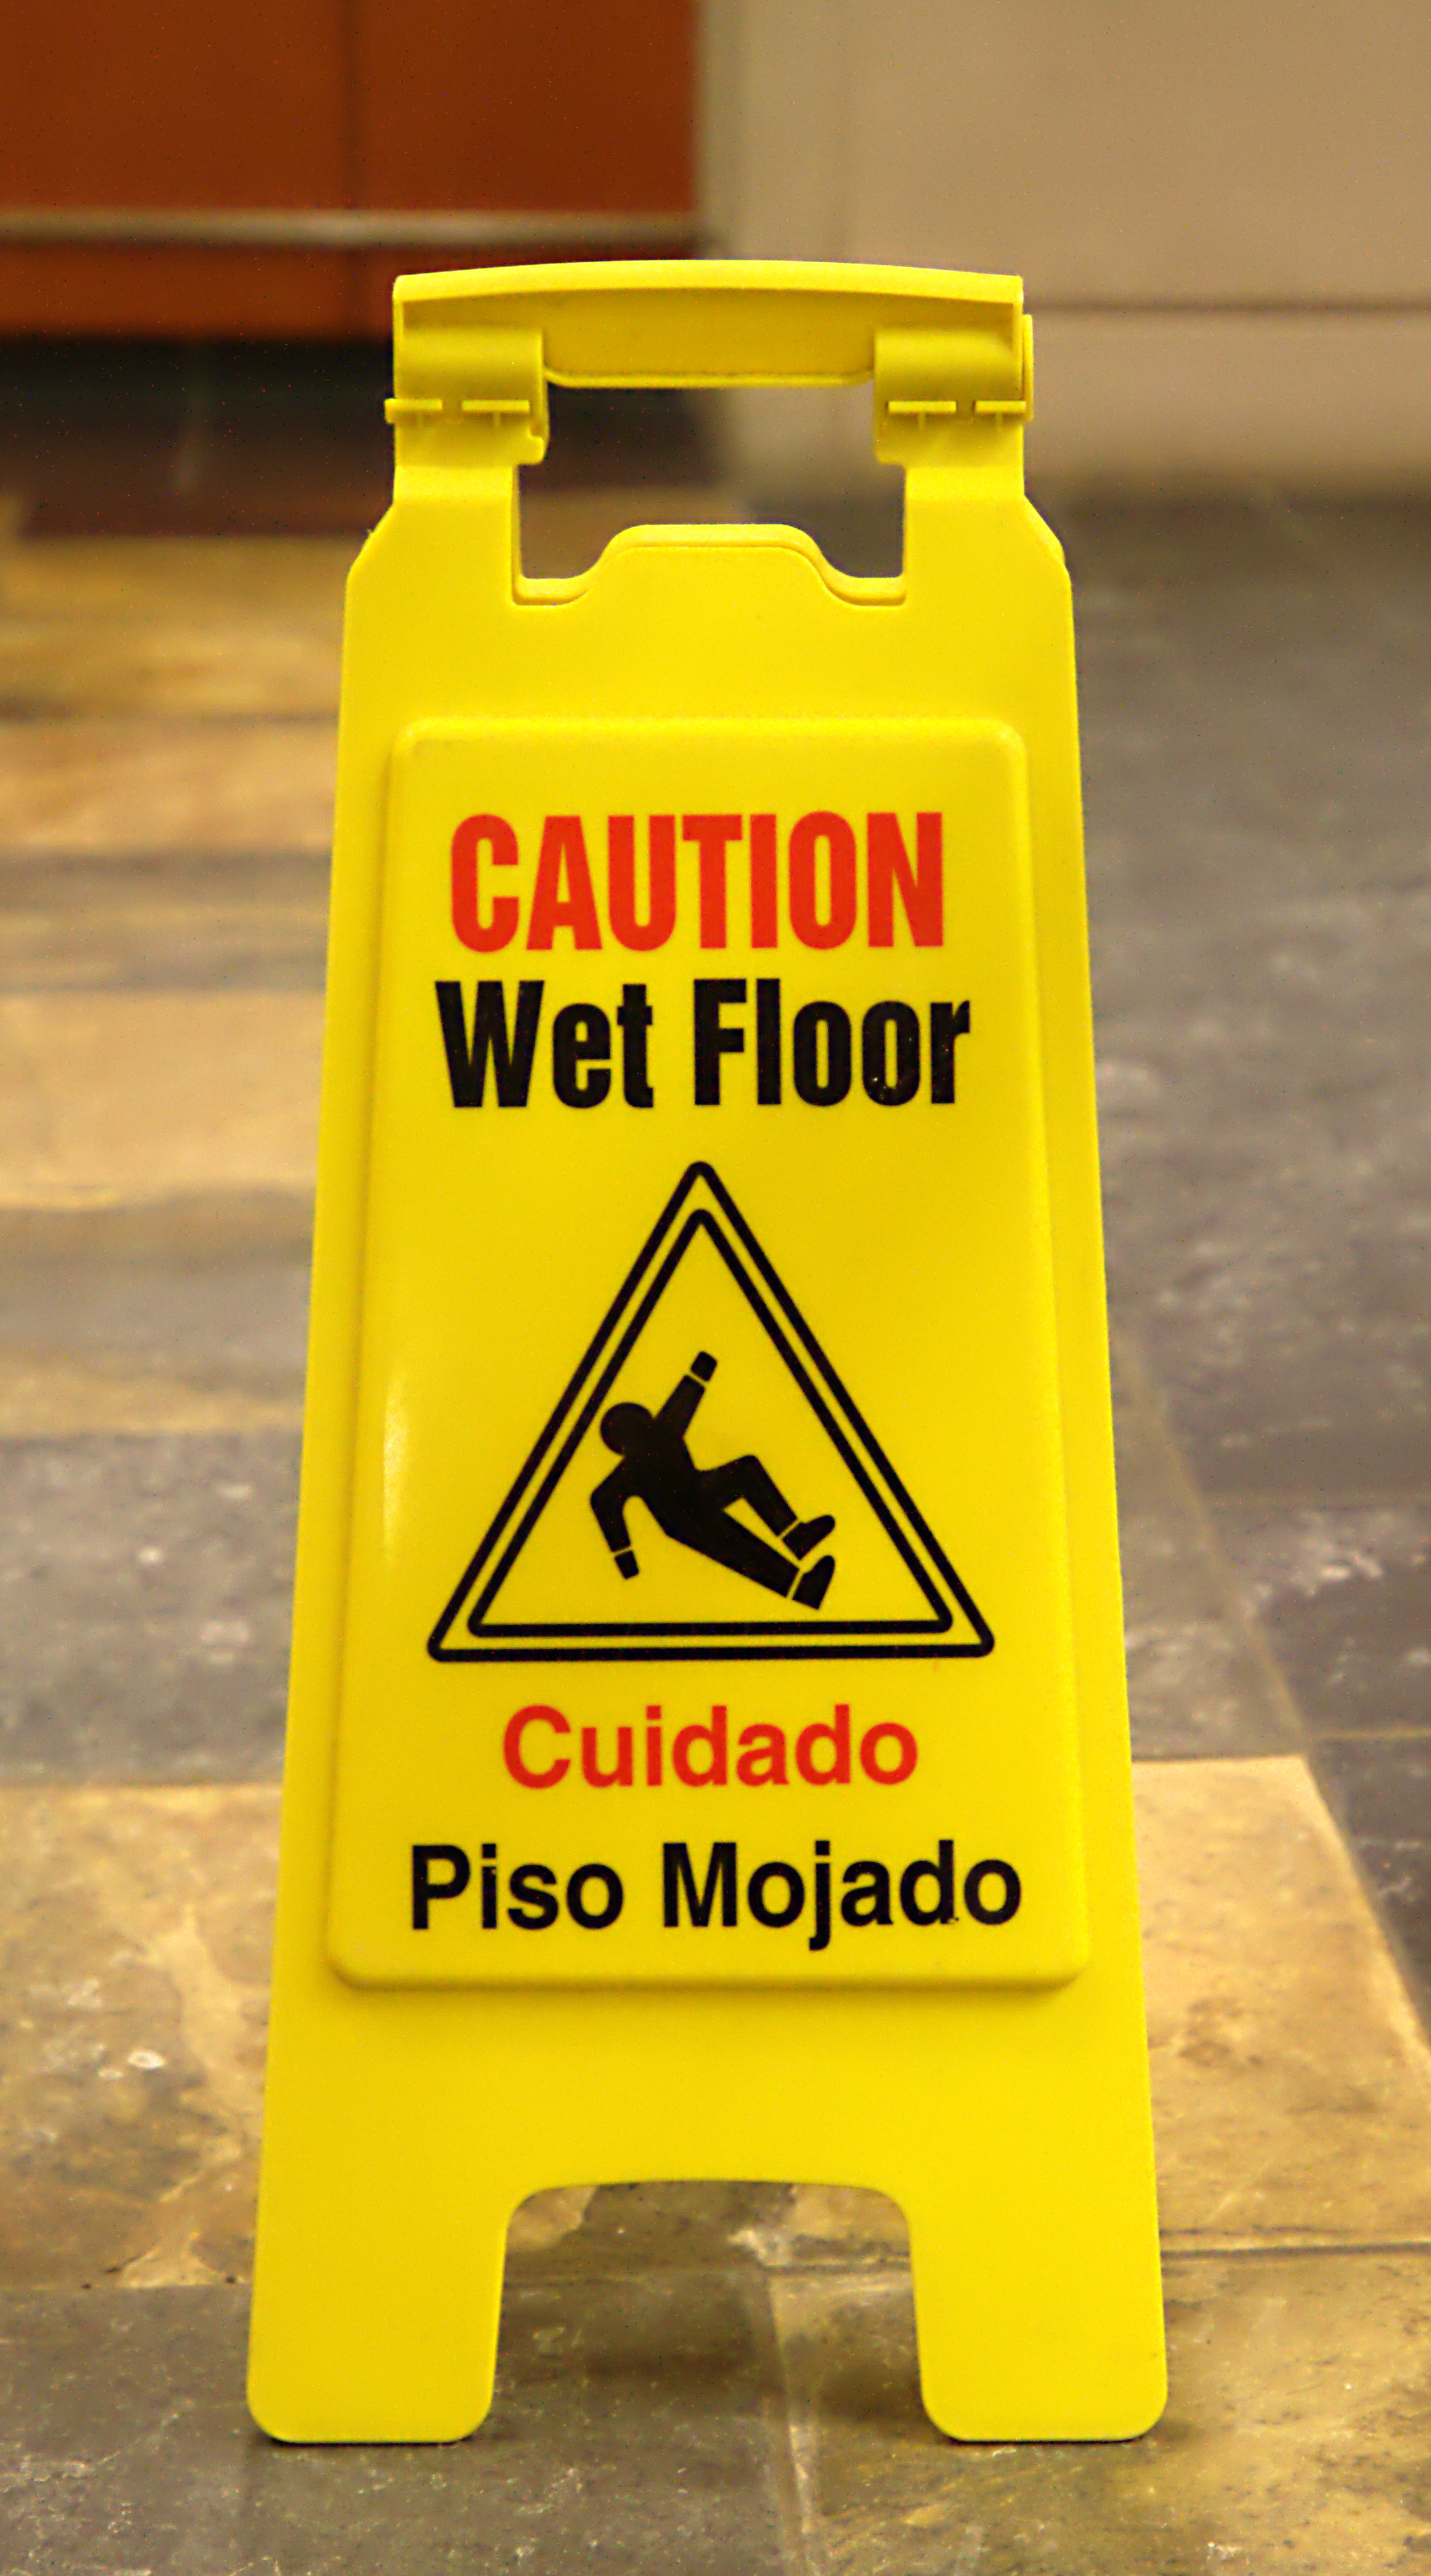 Wet_floor_-_piso_mojado